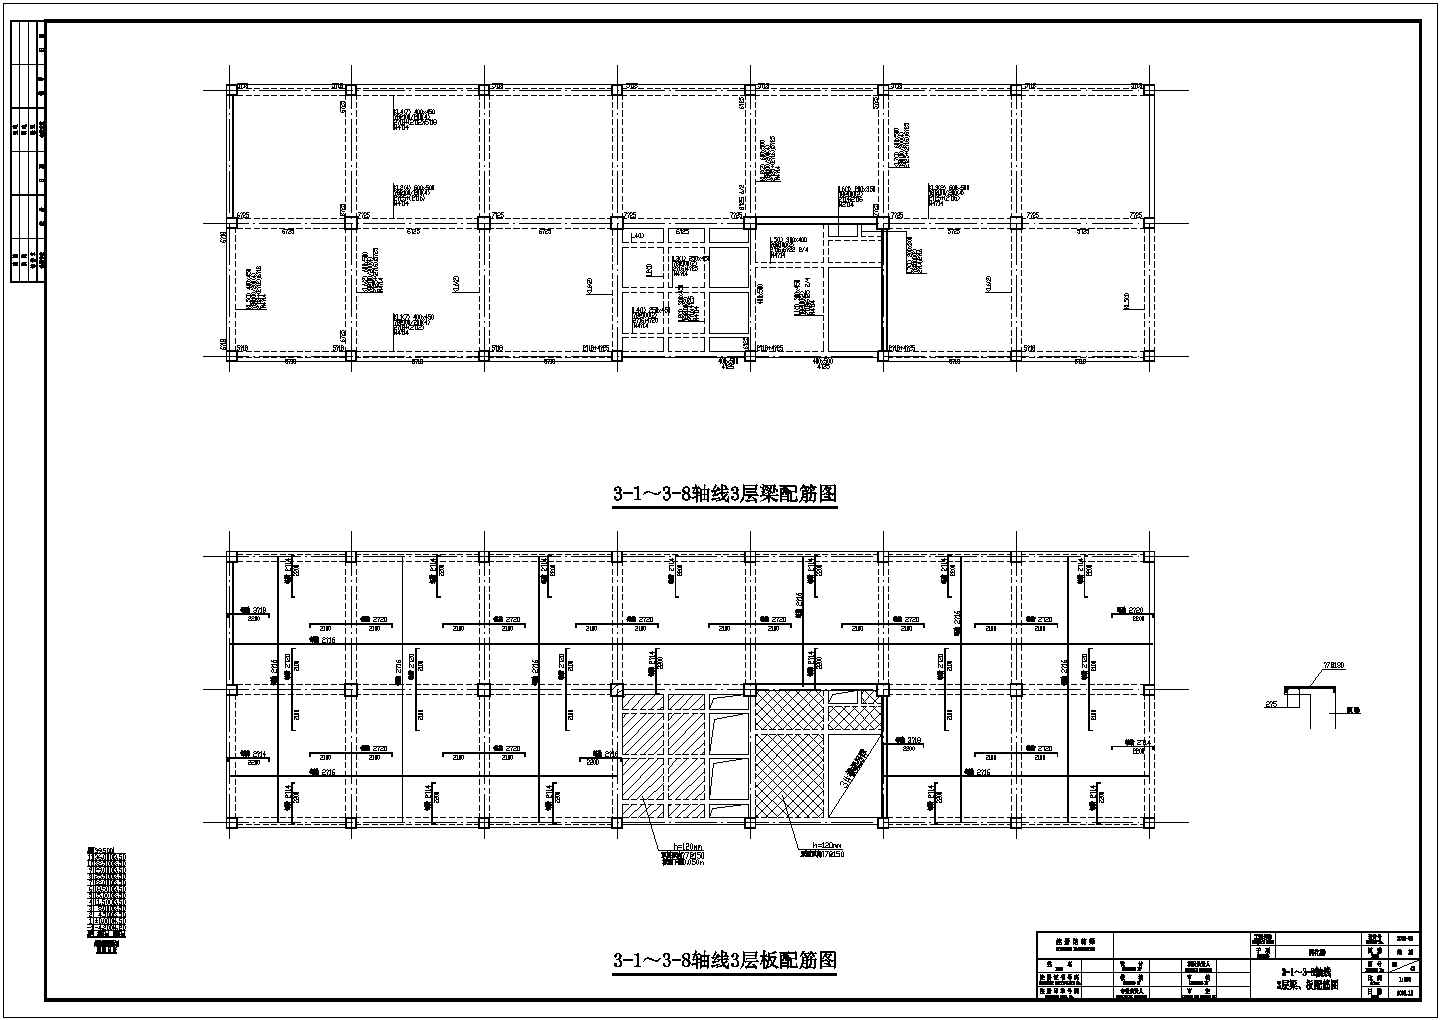 【四川】某检验中心基地建设项目孵化楼结构设计施工图